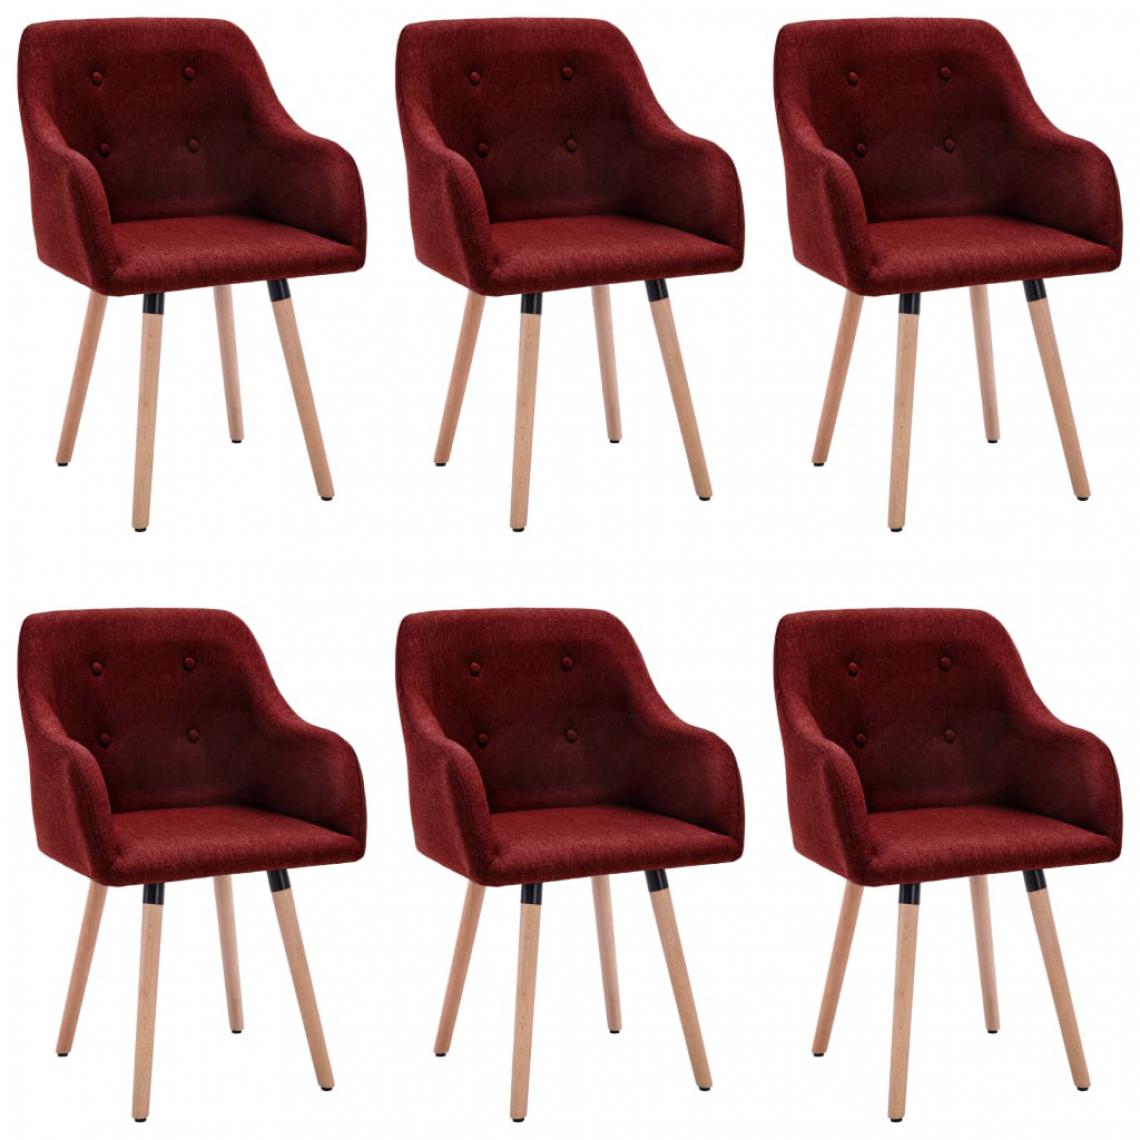 Icaverne - Inedit Fauteuils et chaises famille Podgorica Chaises de salle à manger 6 pcs Rouge bordeaux Tissu - Chaises